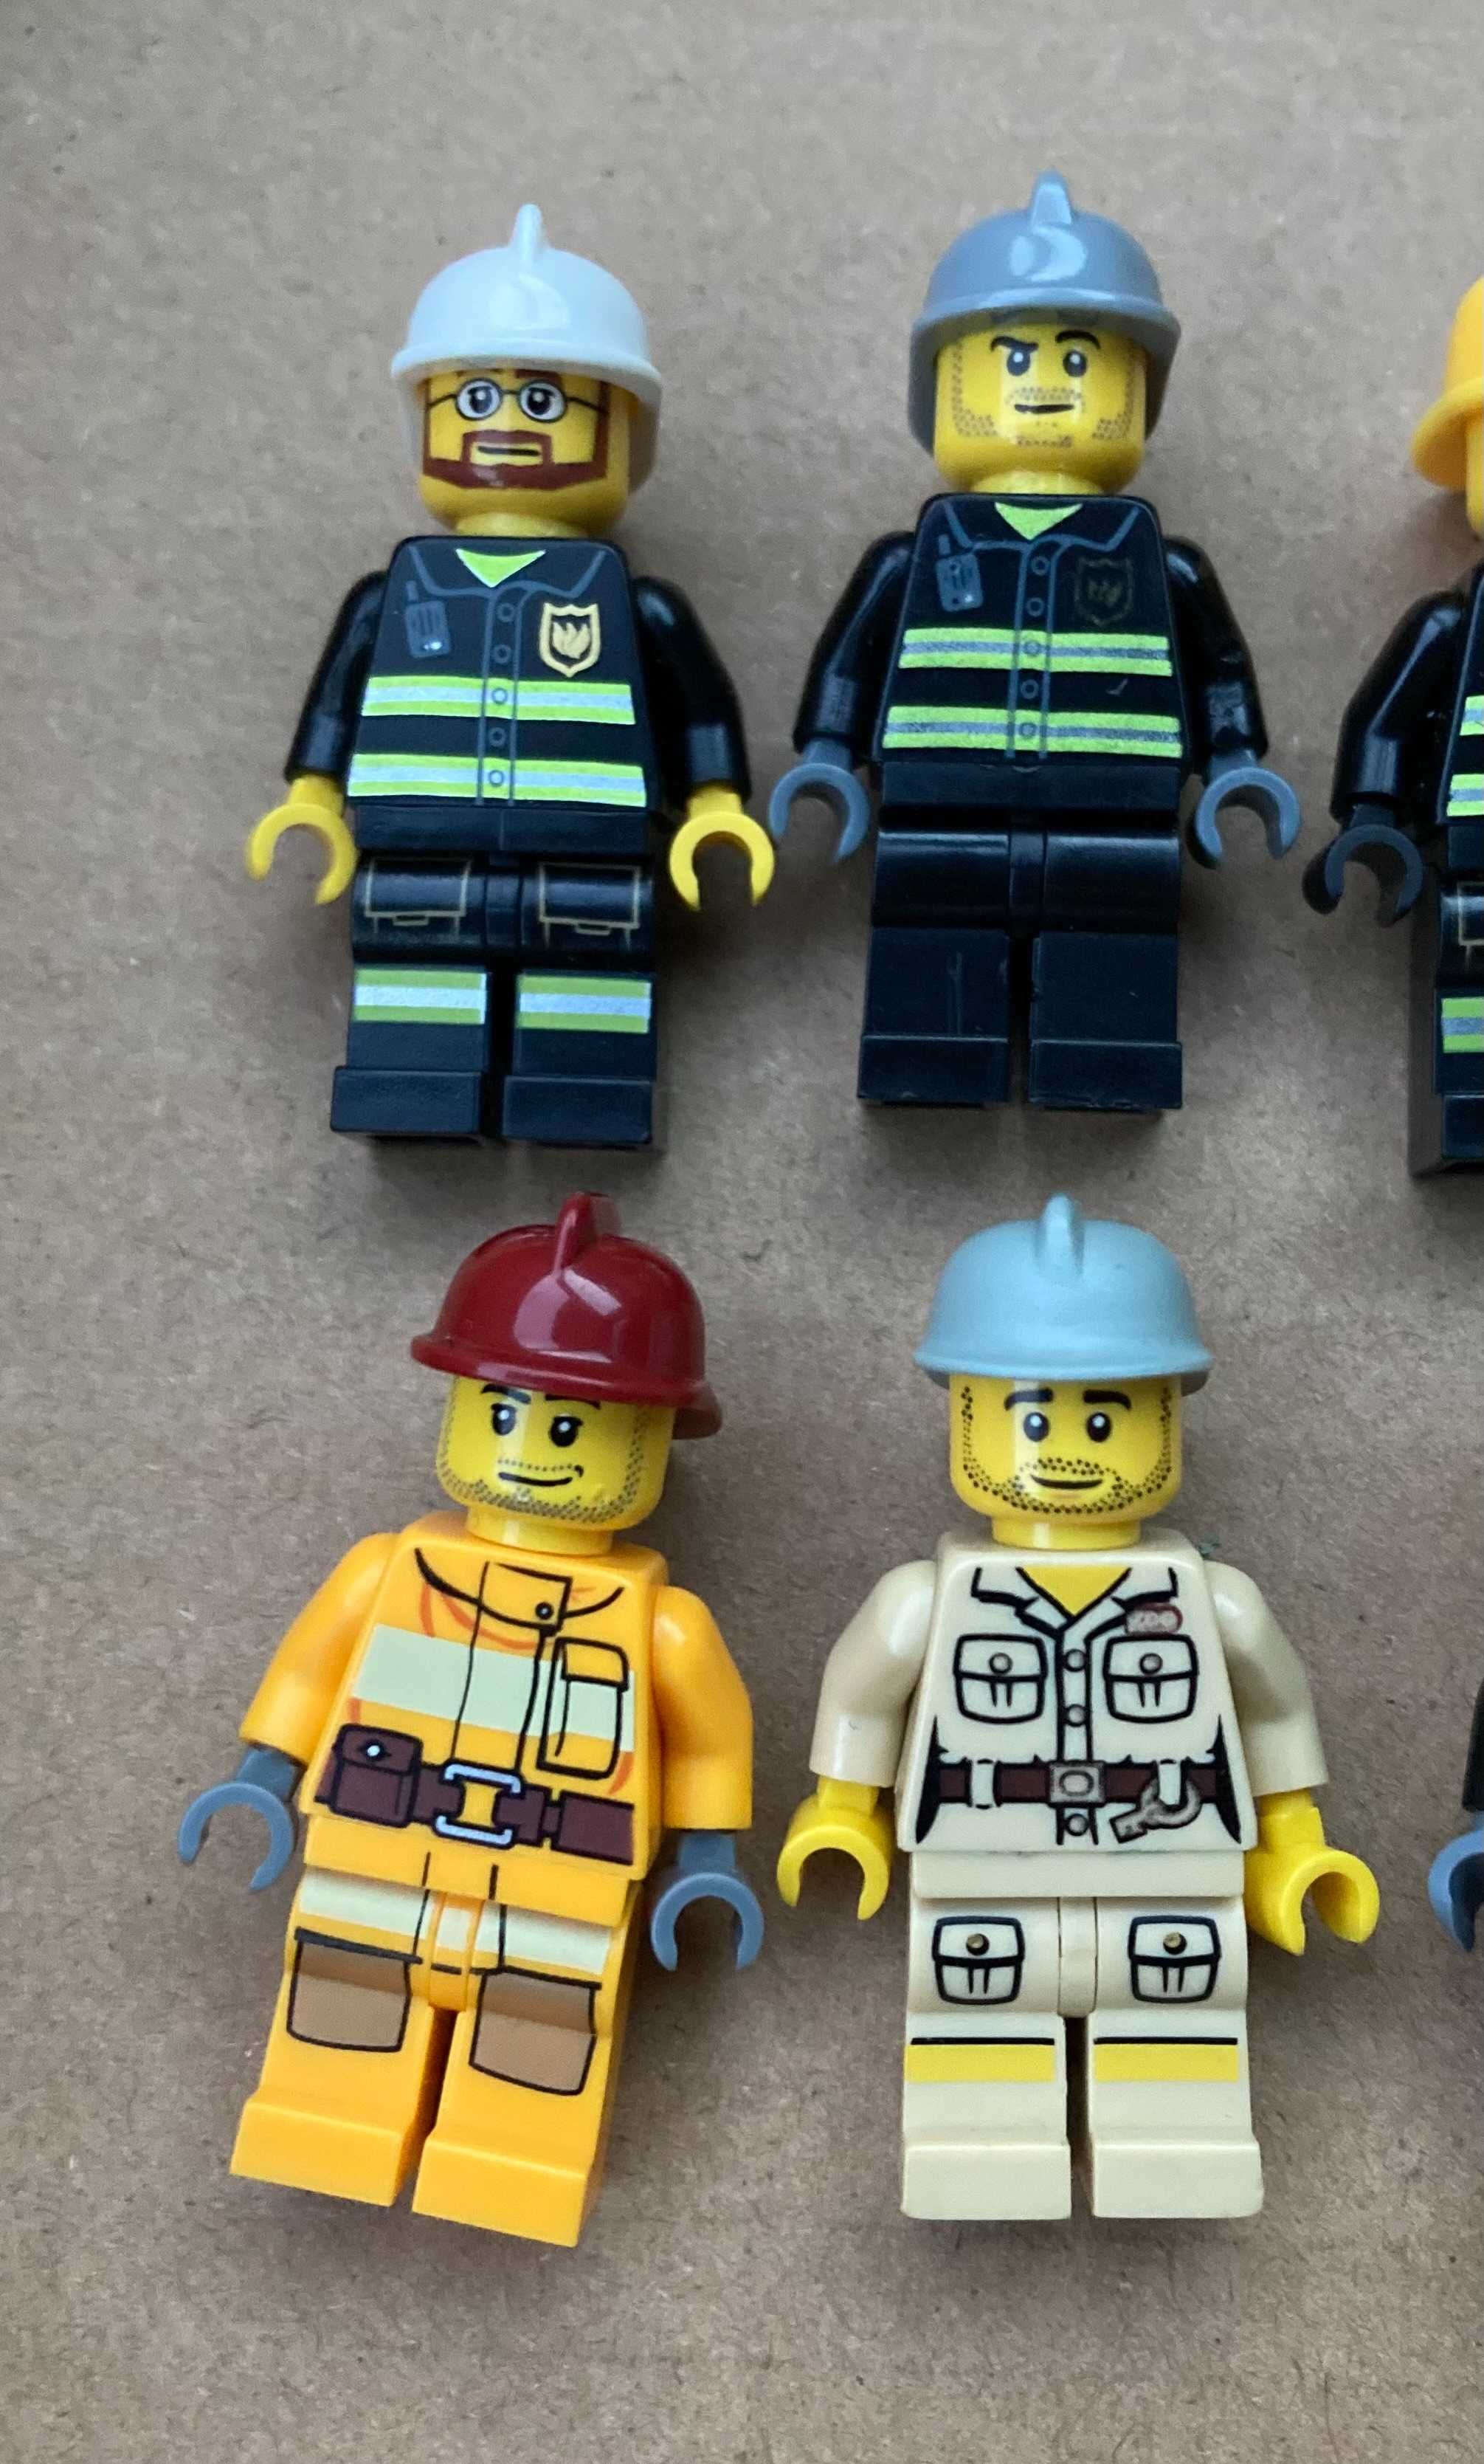 Minifigurki LEGO - 8 strażaków